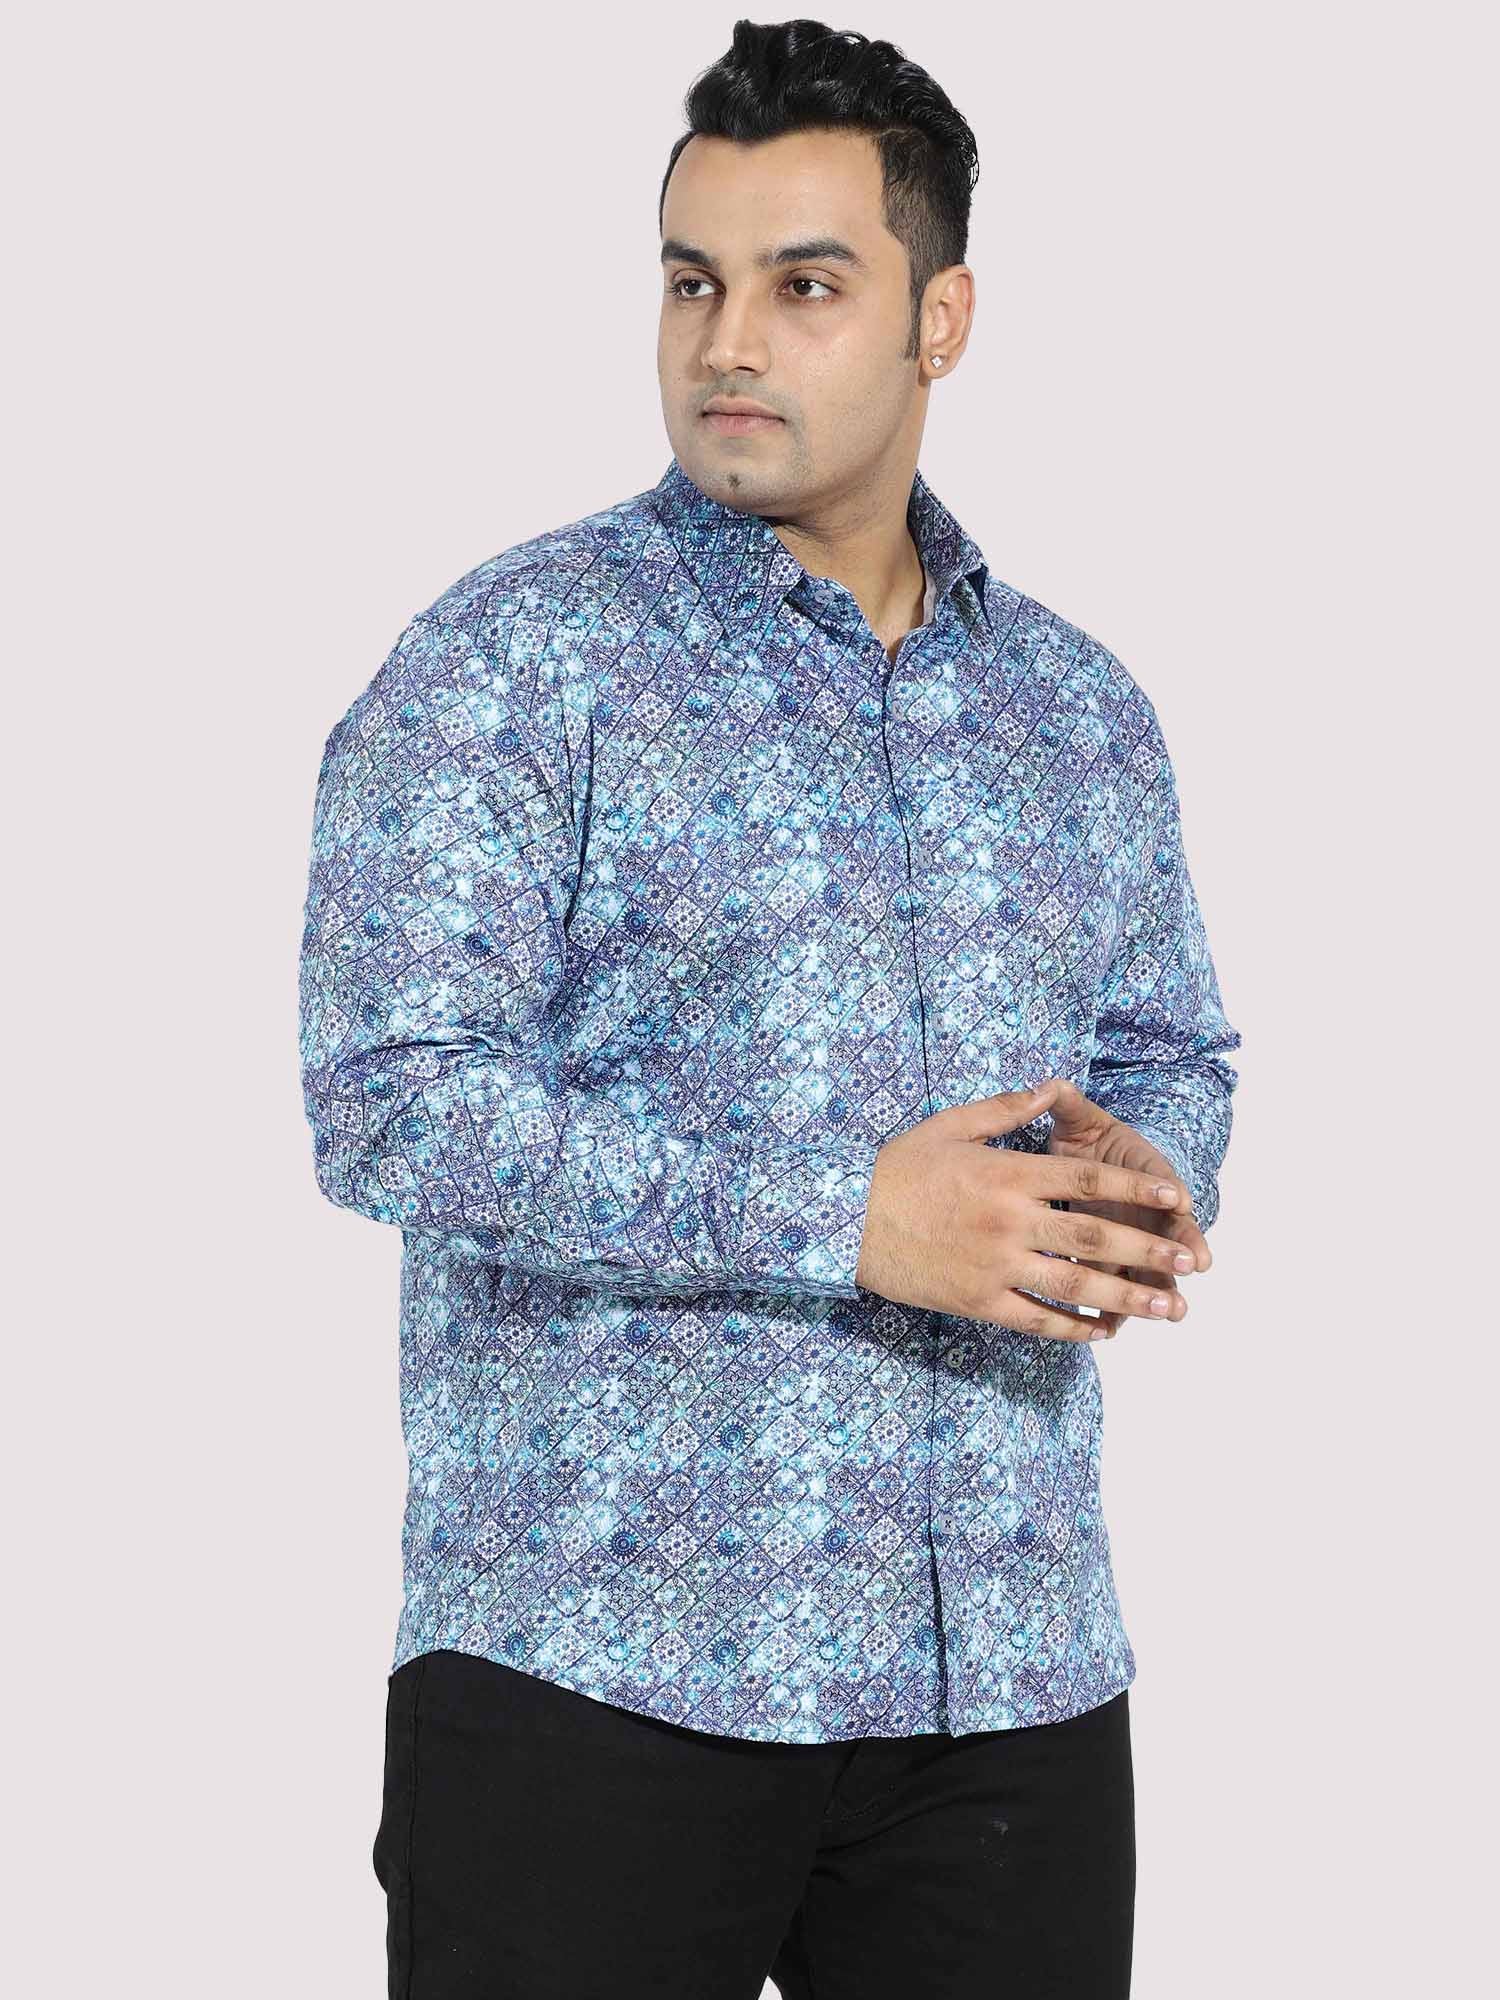 Propel Blue Cotton Satin Designer Shirt Men's Plus Size